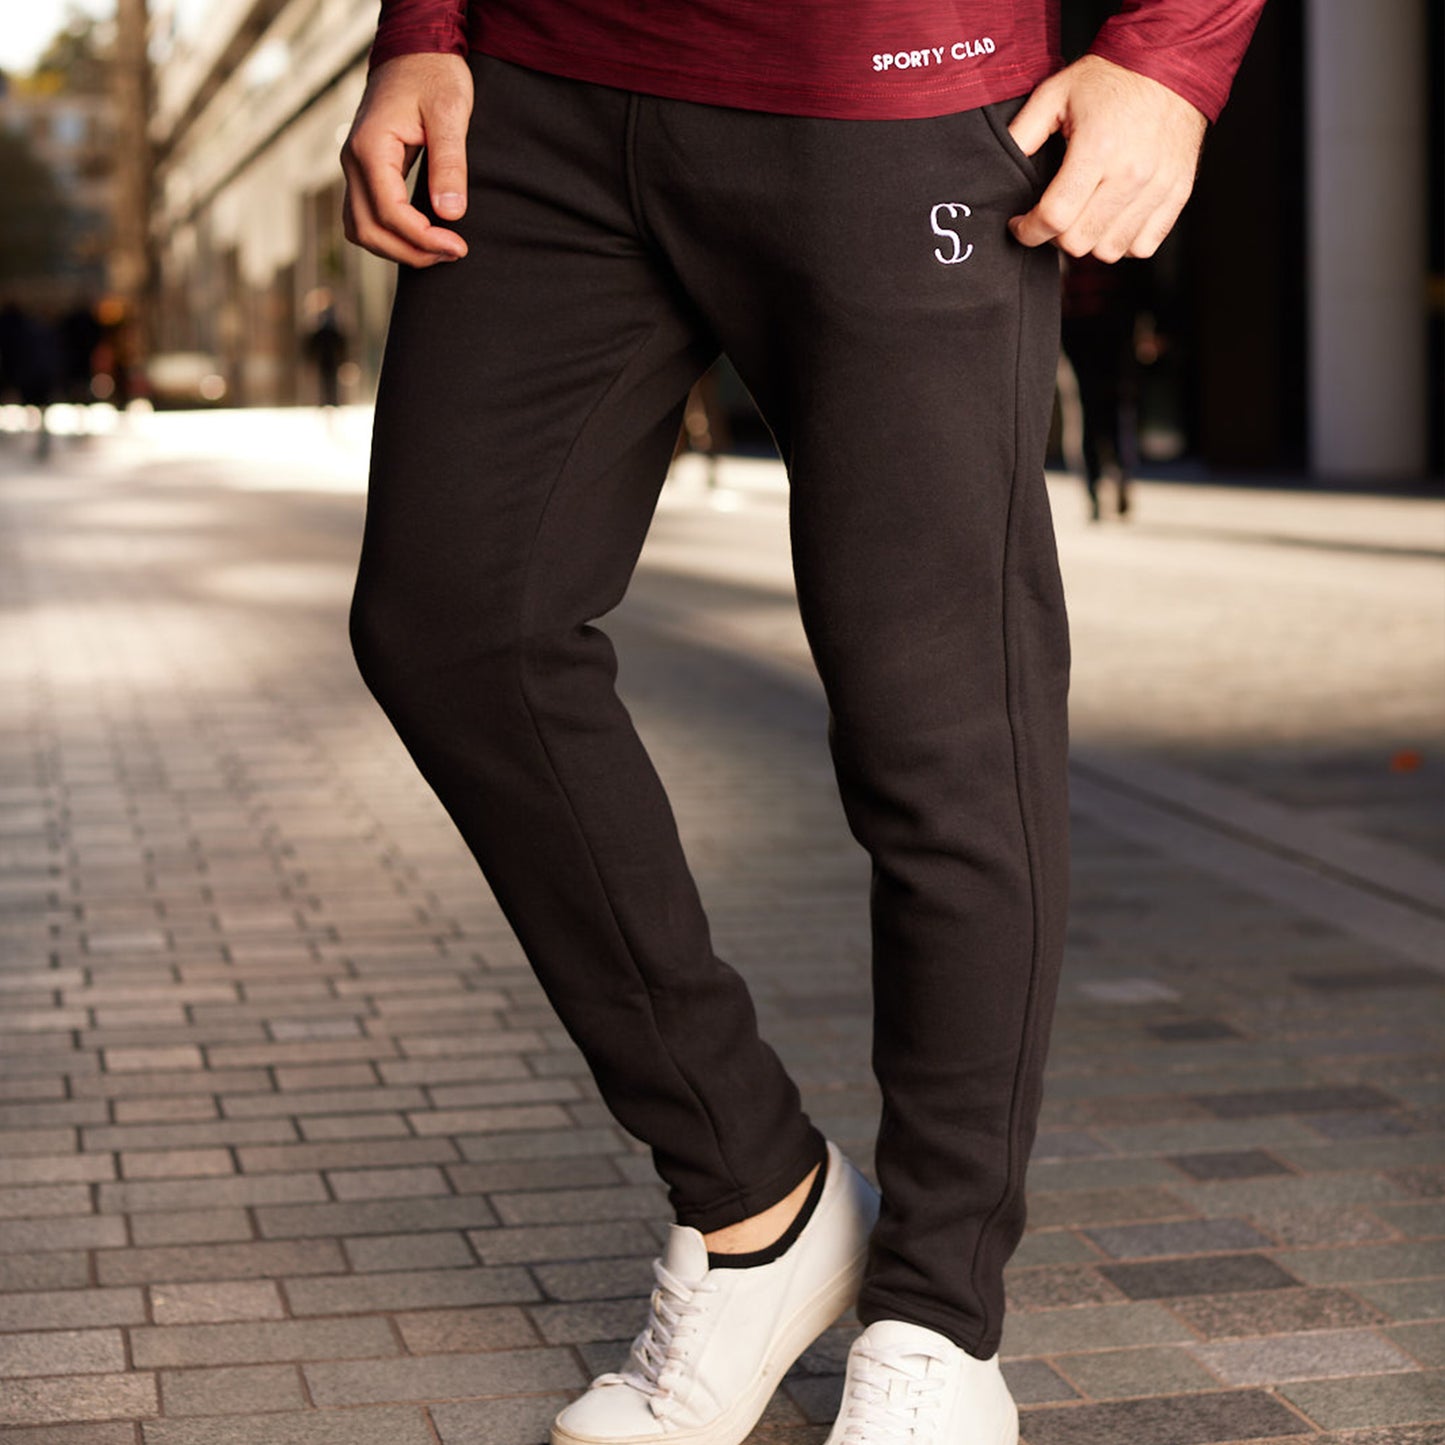 Sporty Clad Men's Black Sweatpants Thermal Cotton Fleece Loungewear